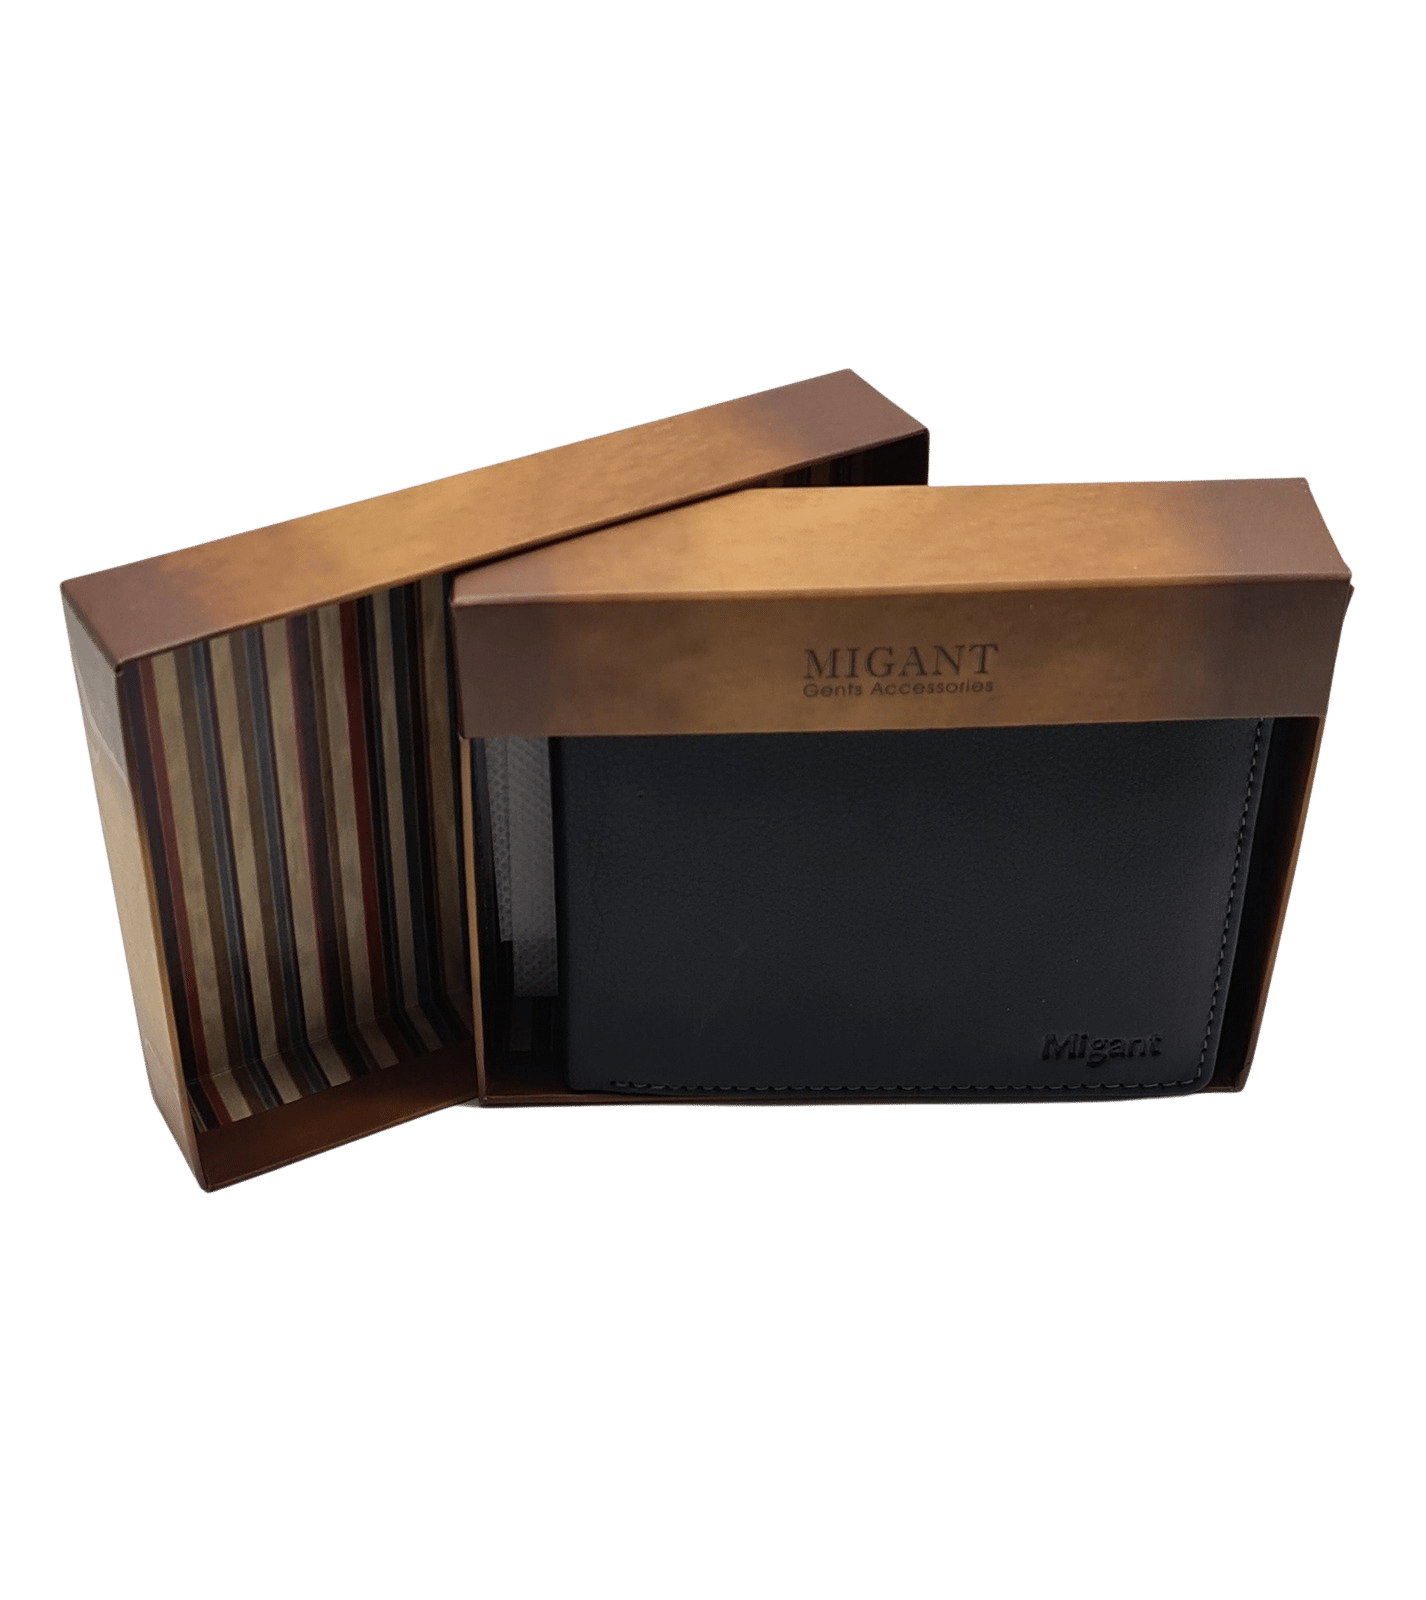 Migant Design black leather wallet in box 6550 - Migant